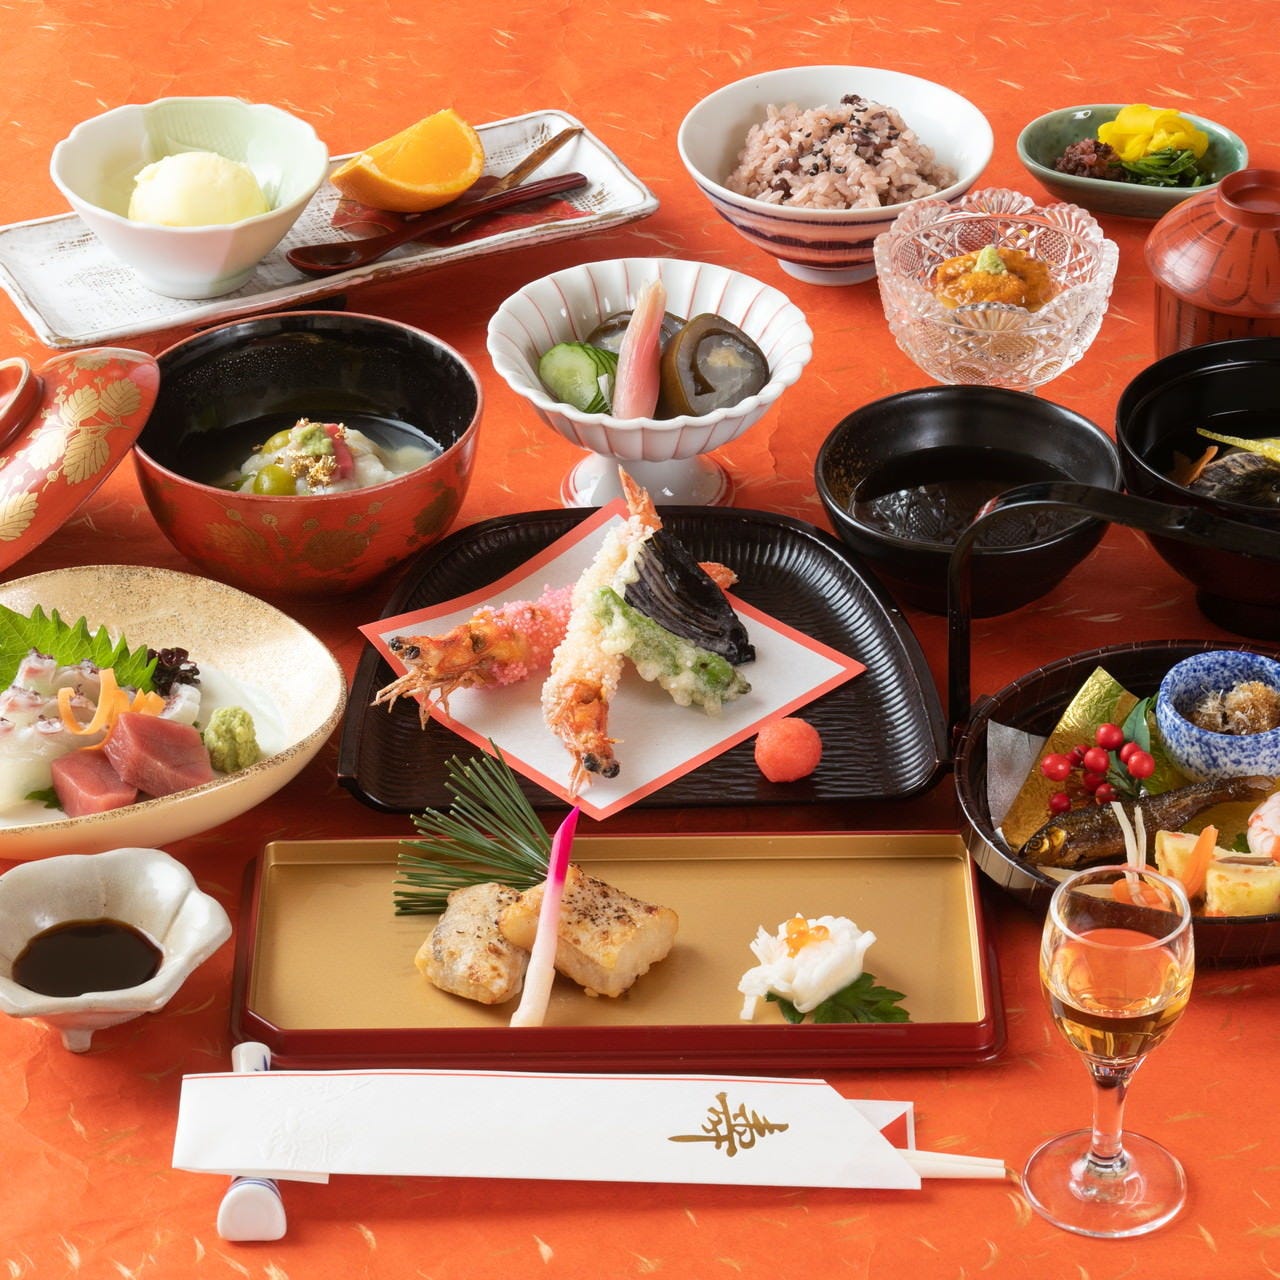 京懐石コース、各種鍋料理など多彩なメニューをご用意